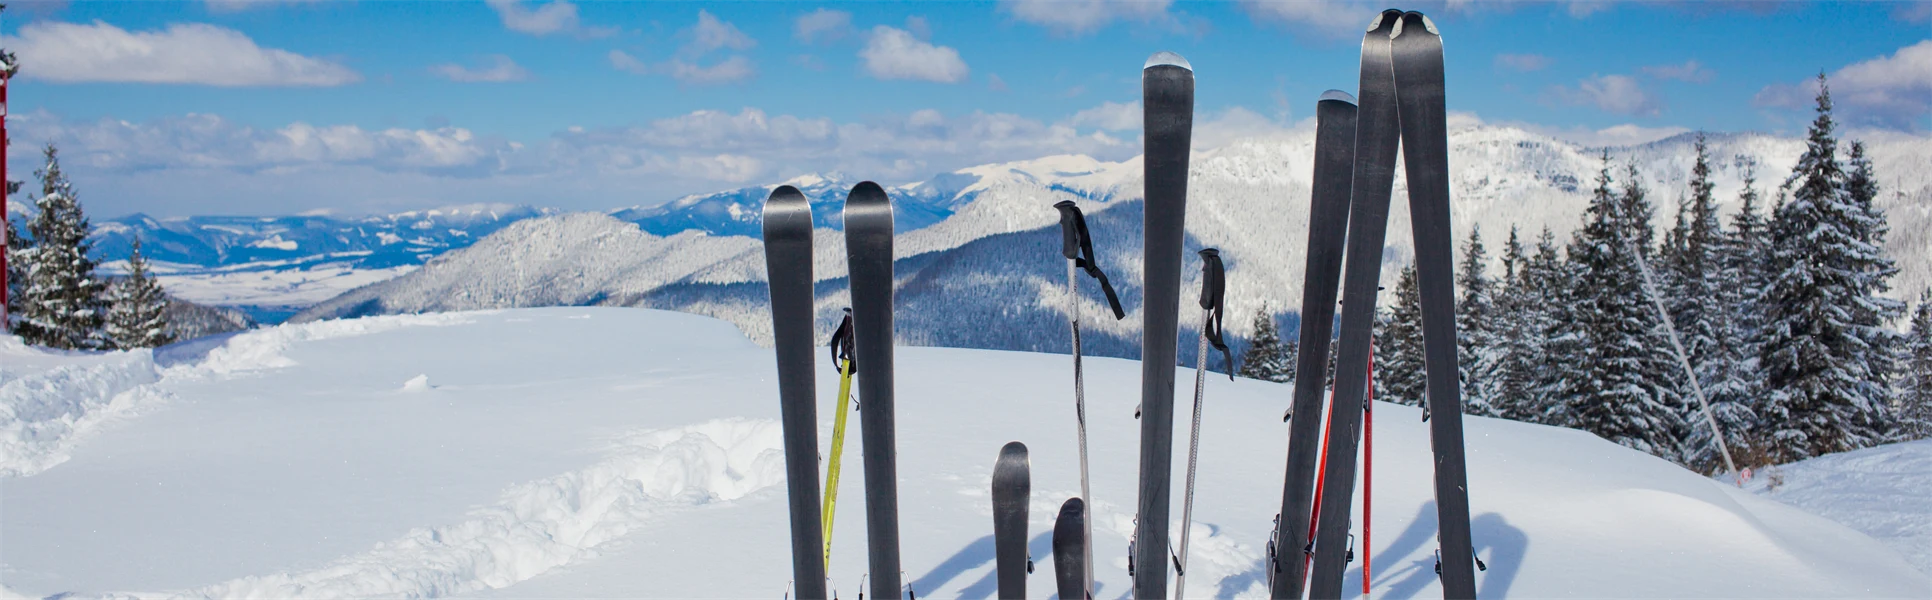 slalomskidor uppställda i snö med fjällutsikt i bakgrunden